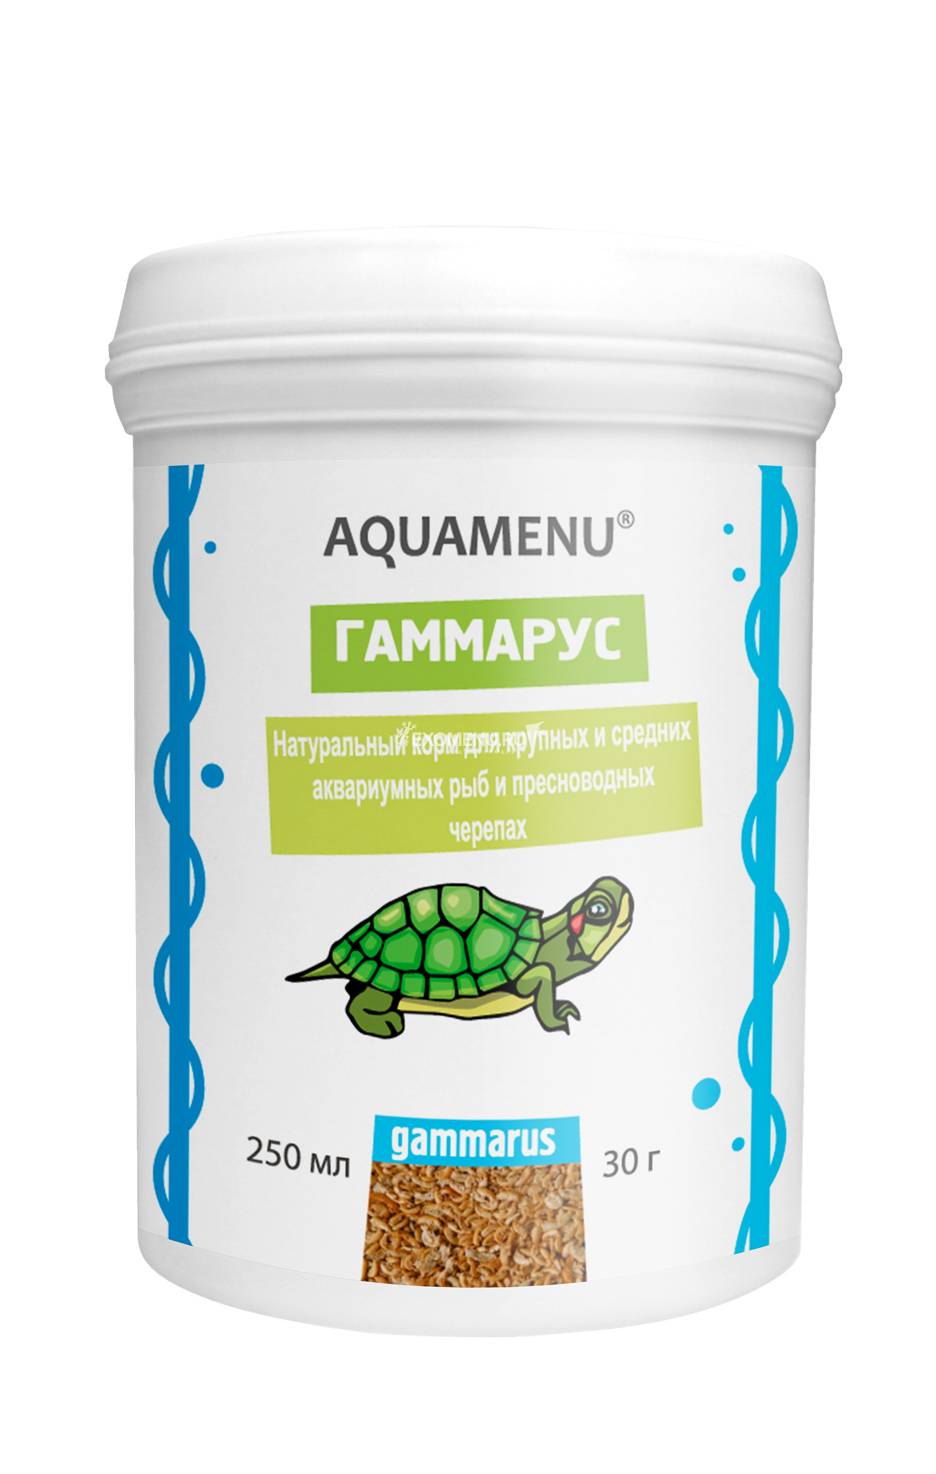 Корм AQUAMENU Гаммарус 250 мл, для крупных и средних рыб, черепах